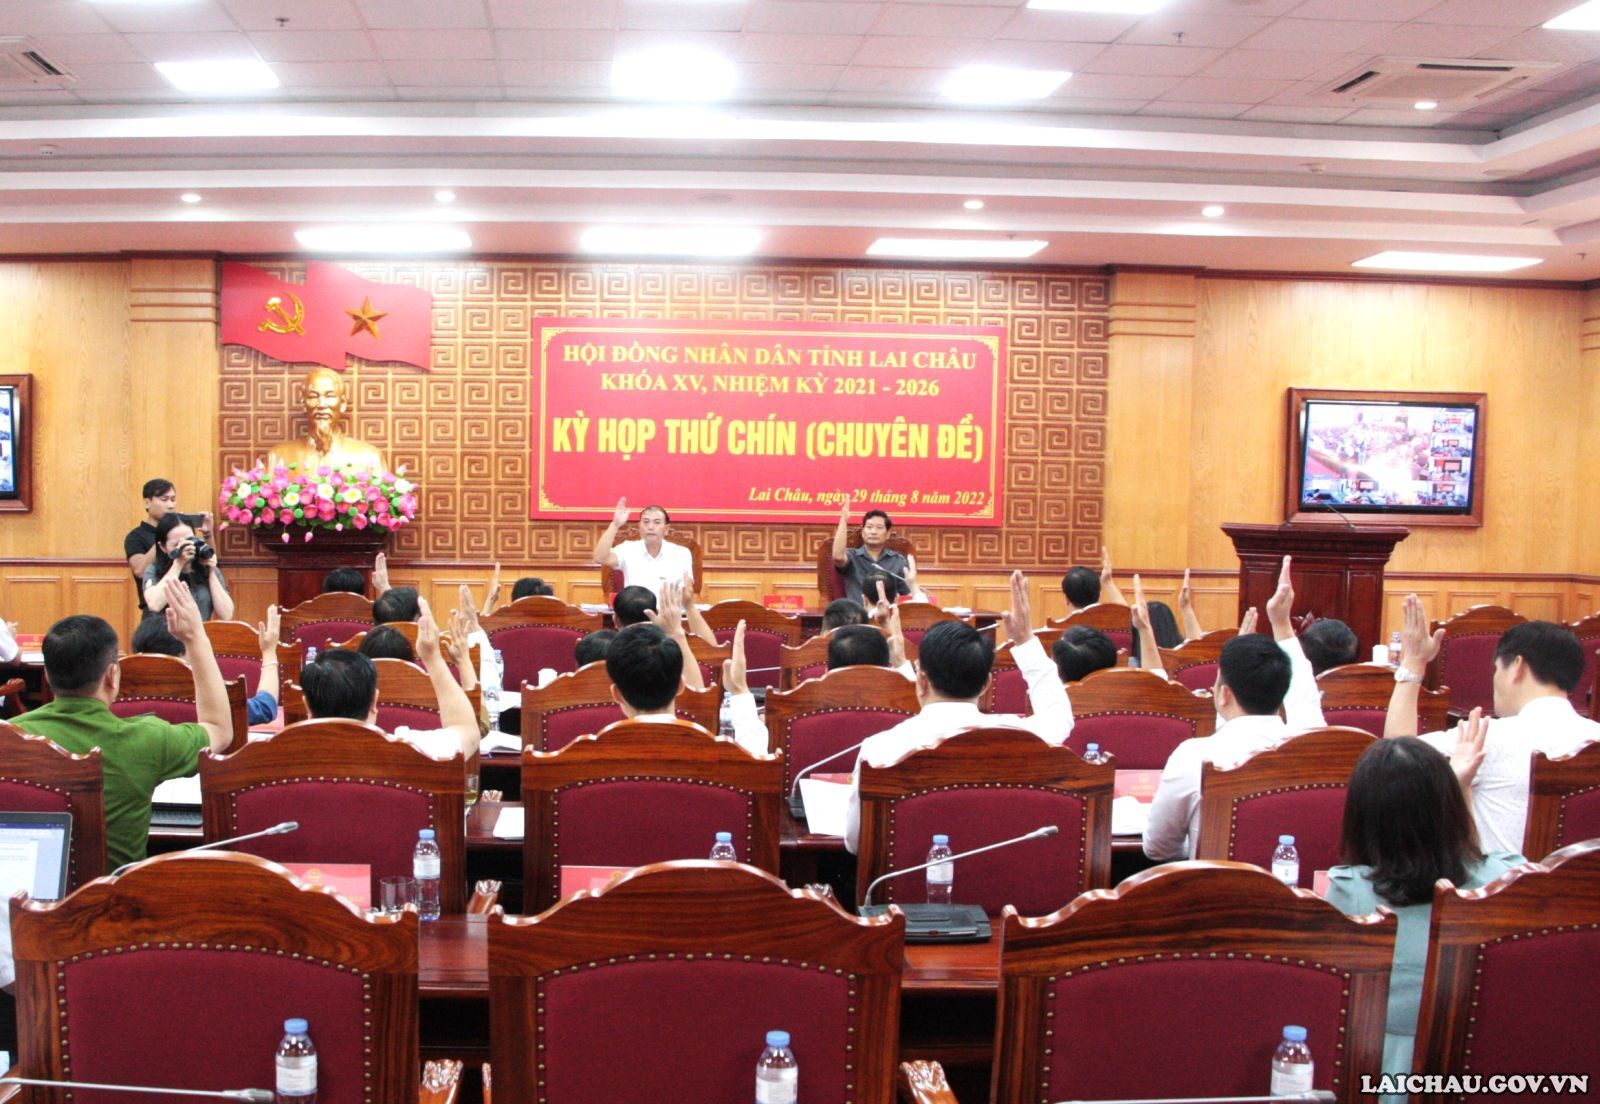 Kỳ họp HĐND tỉnh Lai Châu lần thứ chín (chuyên đề) khóa XV, nhiệm kỳ 2021 - 2026